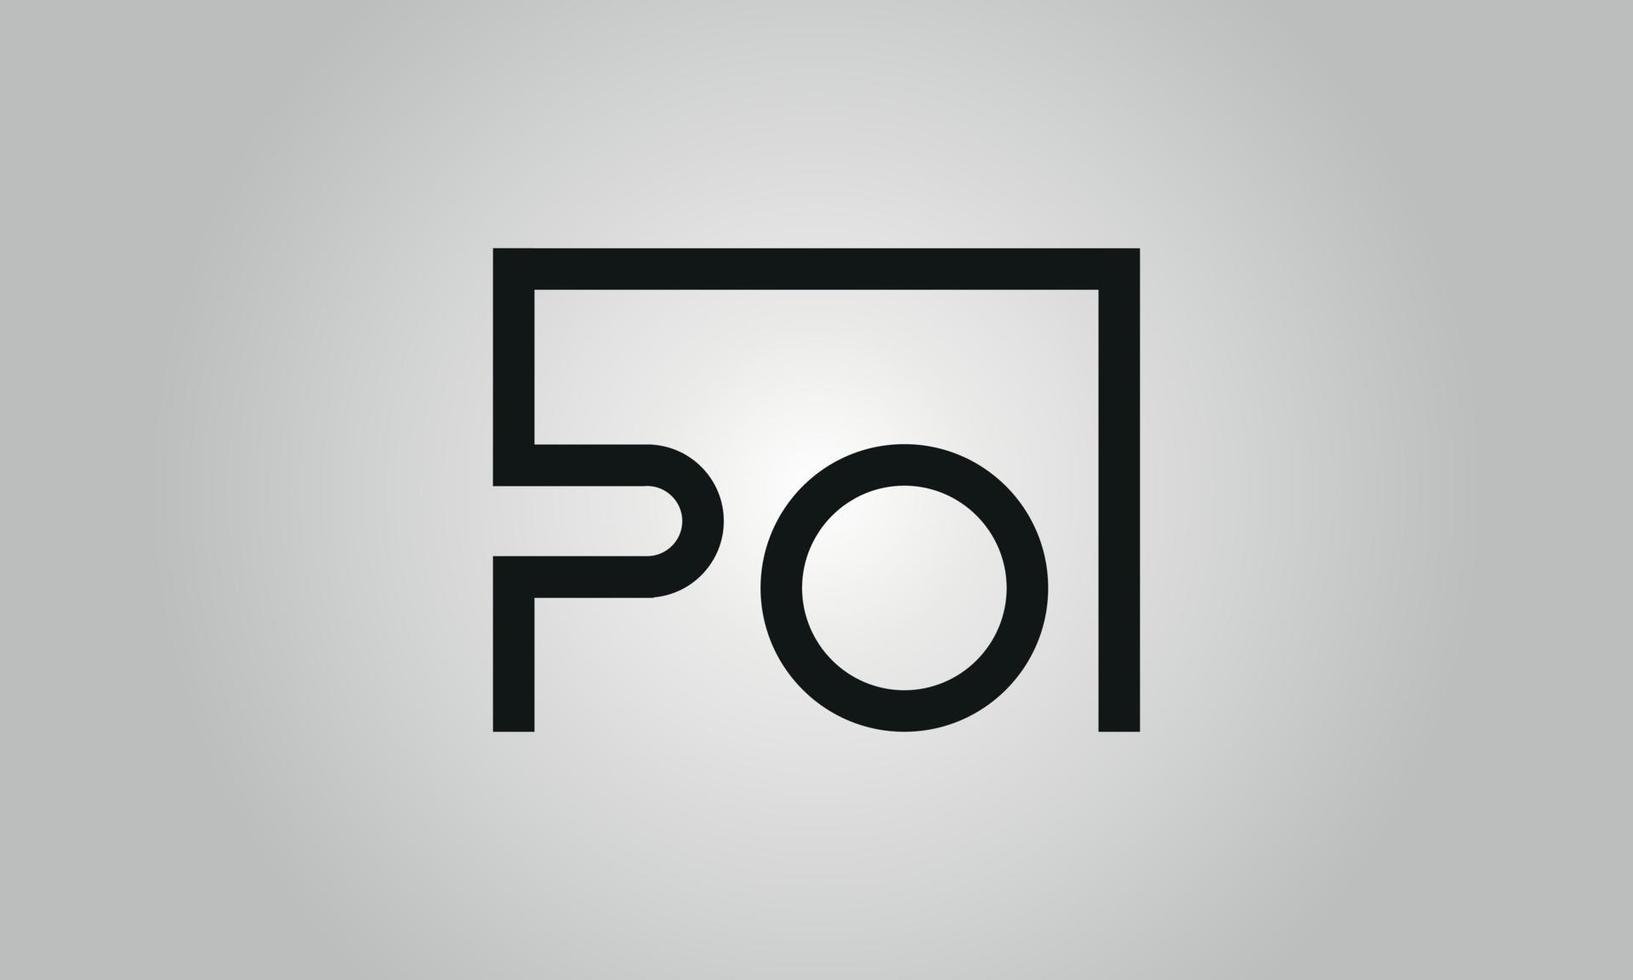 création de logo lettre po. logo po avec forme carrée dans le modèle de vecteur gratuit de vecteur de couleurs noires.